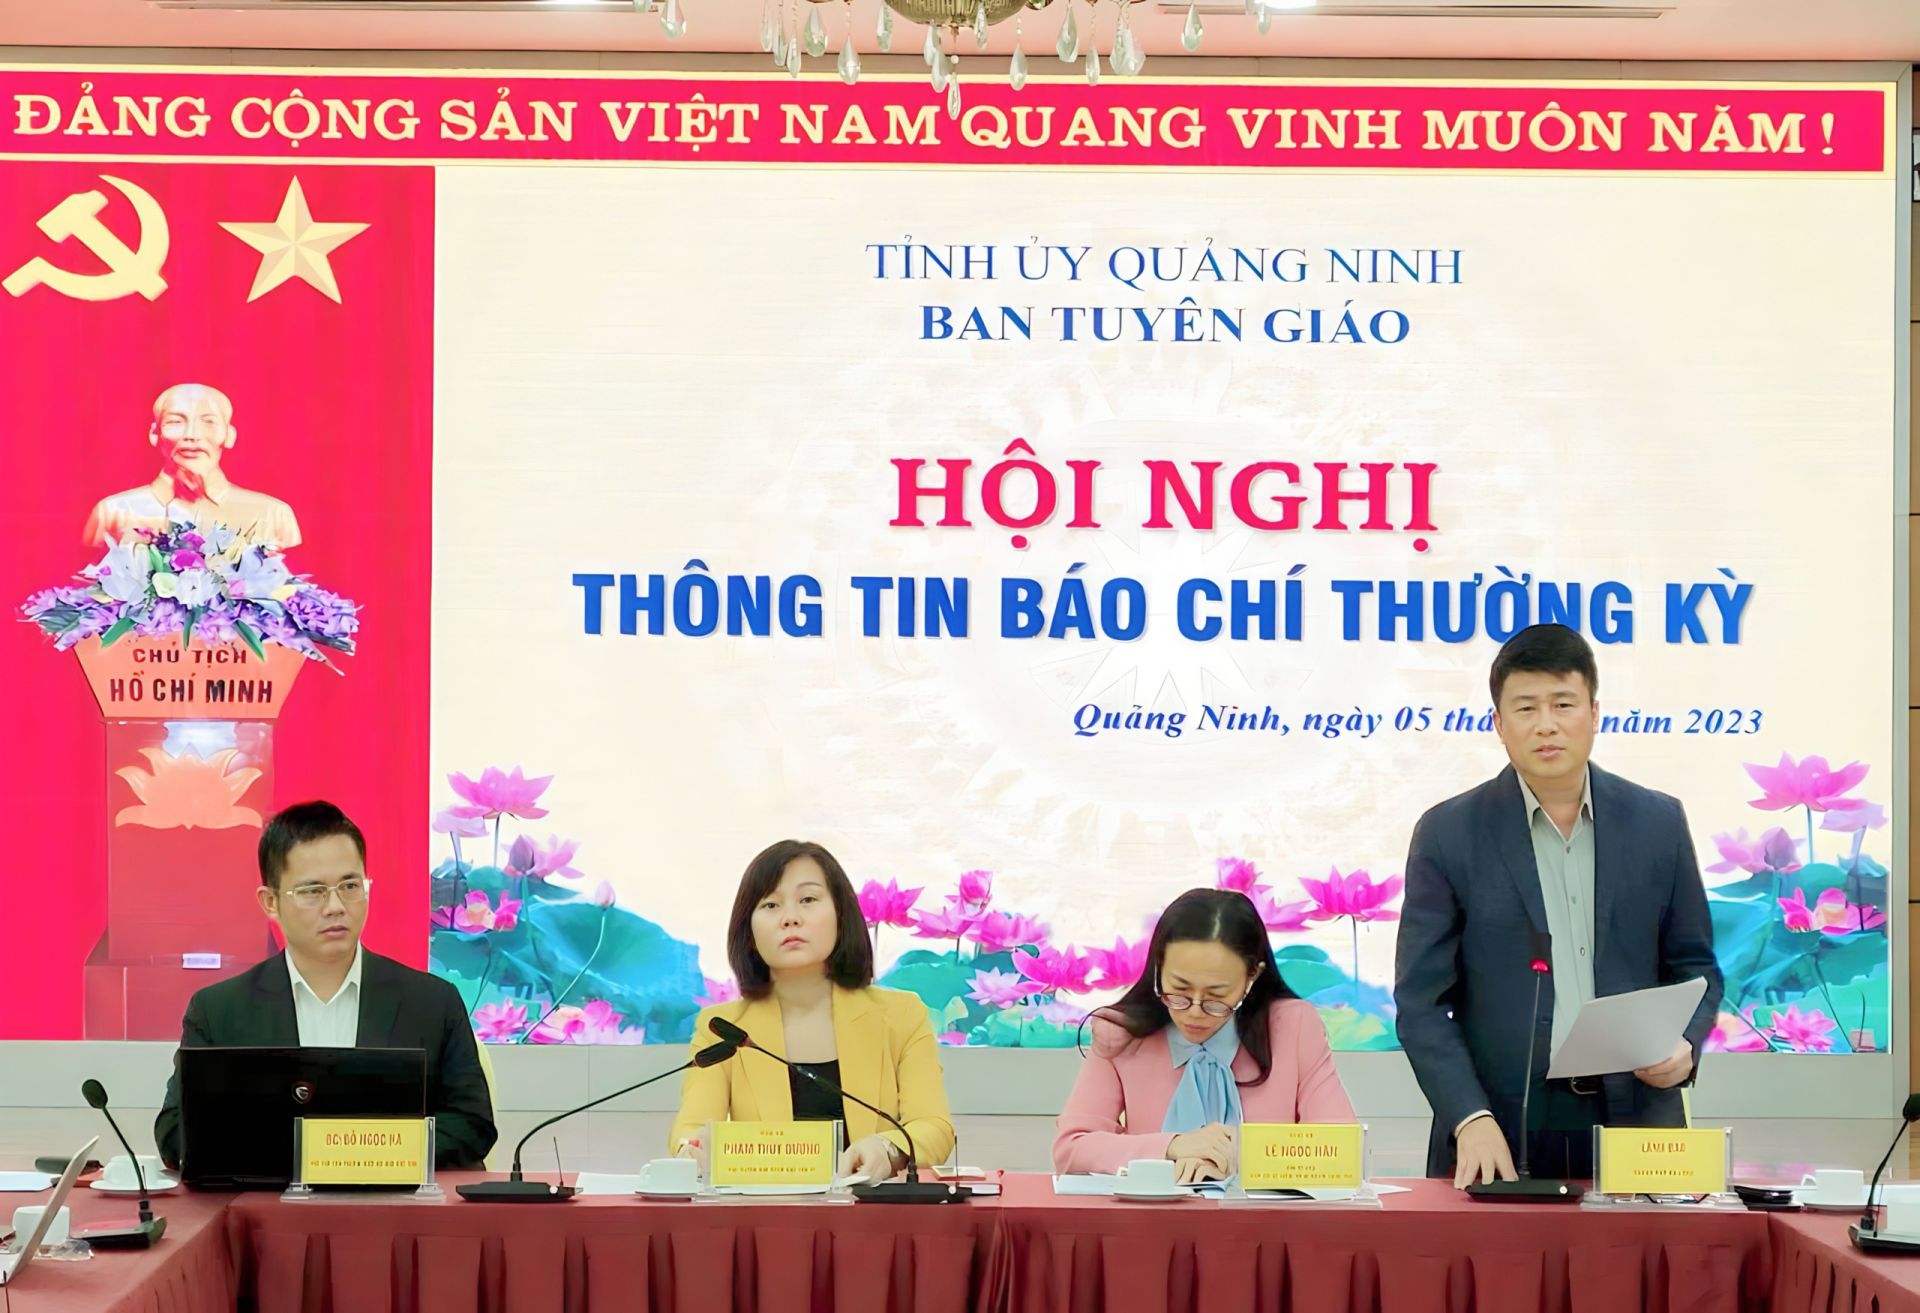 Đồng chí Nguyễn Ngọc Sơn PCT UBND TP thông tin về tổ chức các hoạt động chào mừng và Lễ kỷ niệm 30 năm ngày thành lập thành phố Hạ Long